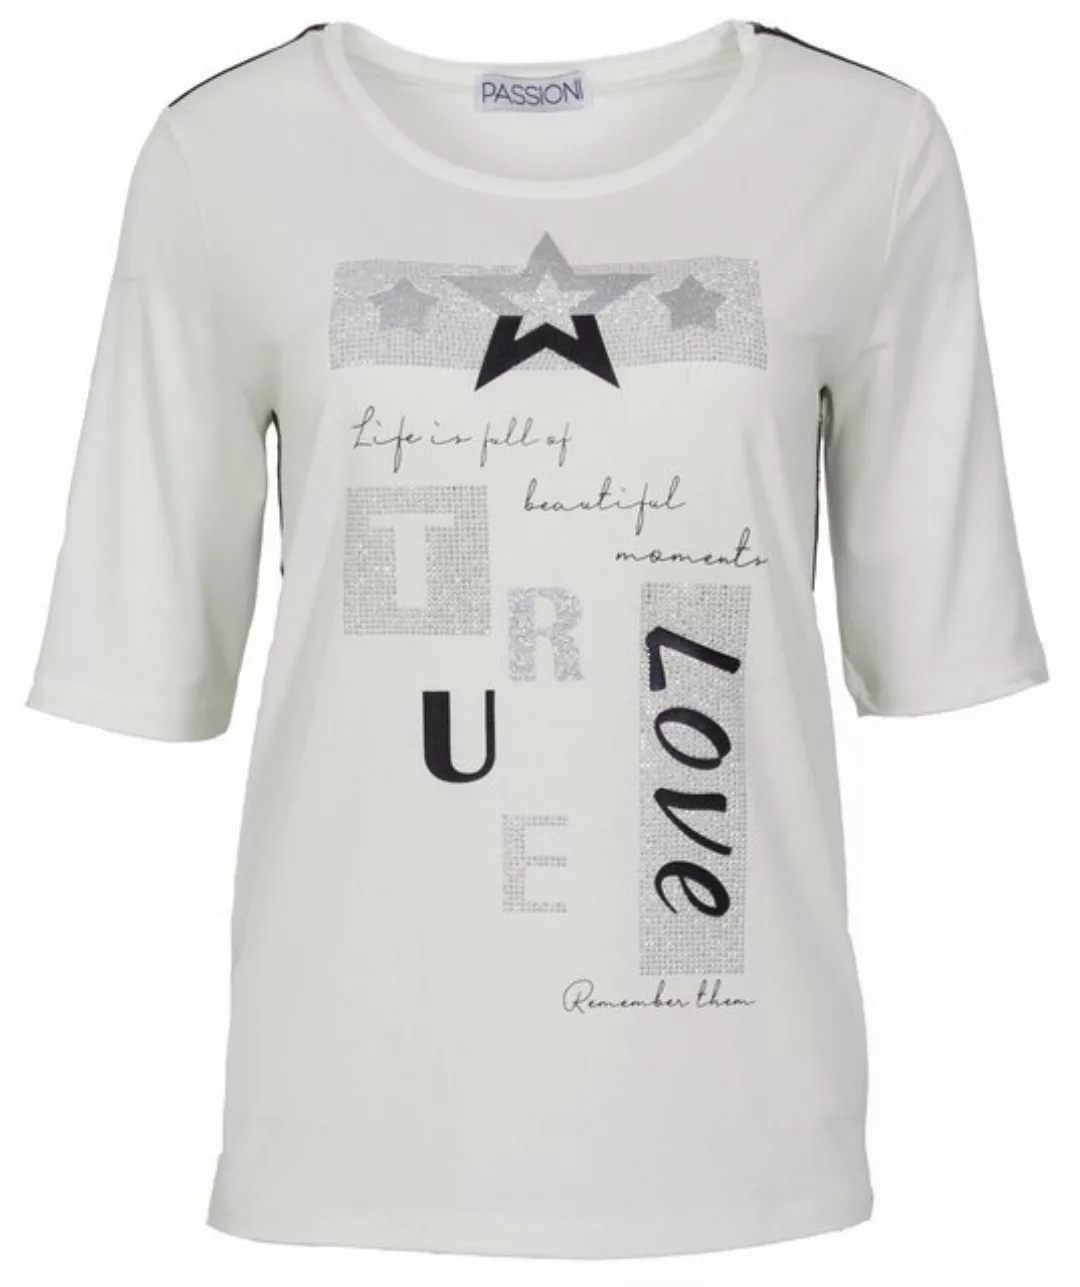 Passioni Print-Shirt in Weiß, Statement Print mit Sternen sowie Streifenabs günstig online kaufen